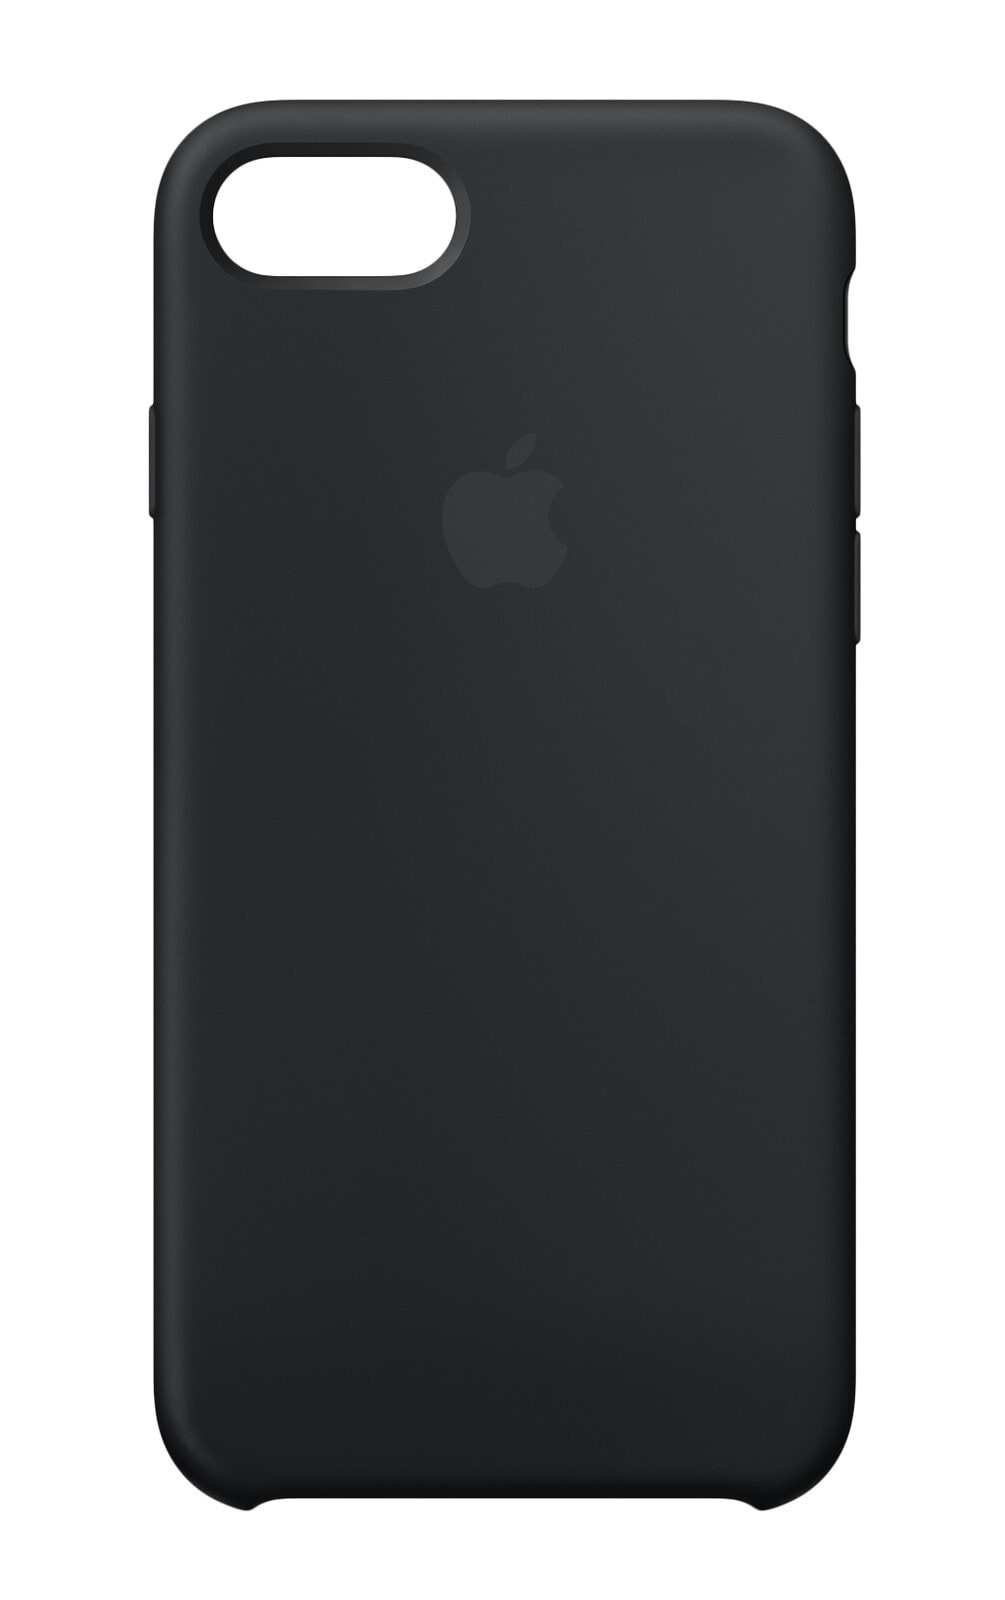 Чехол силиконовый Apple Silicone Case MQGK2ZM/A для iPhone 8/7 чёрный